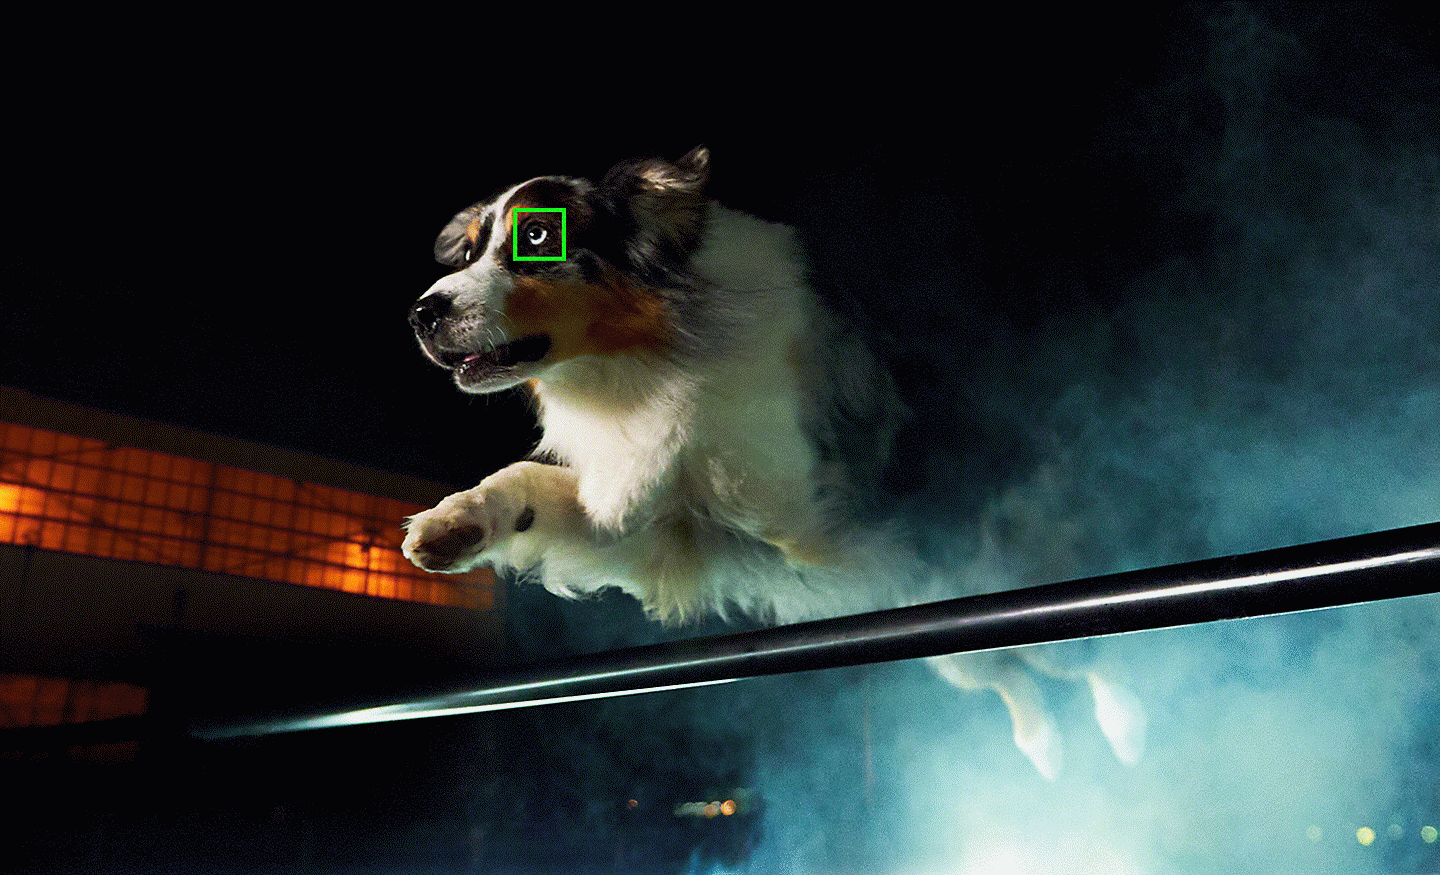 Hình ảnh trong điều kiện ánh sáng yếu chụp chú chó đang nhảy với điểm AF màu xanh lá trên mắt